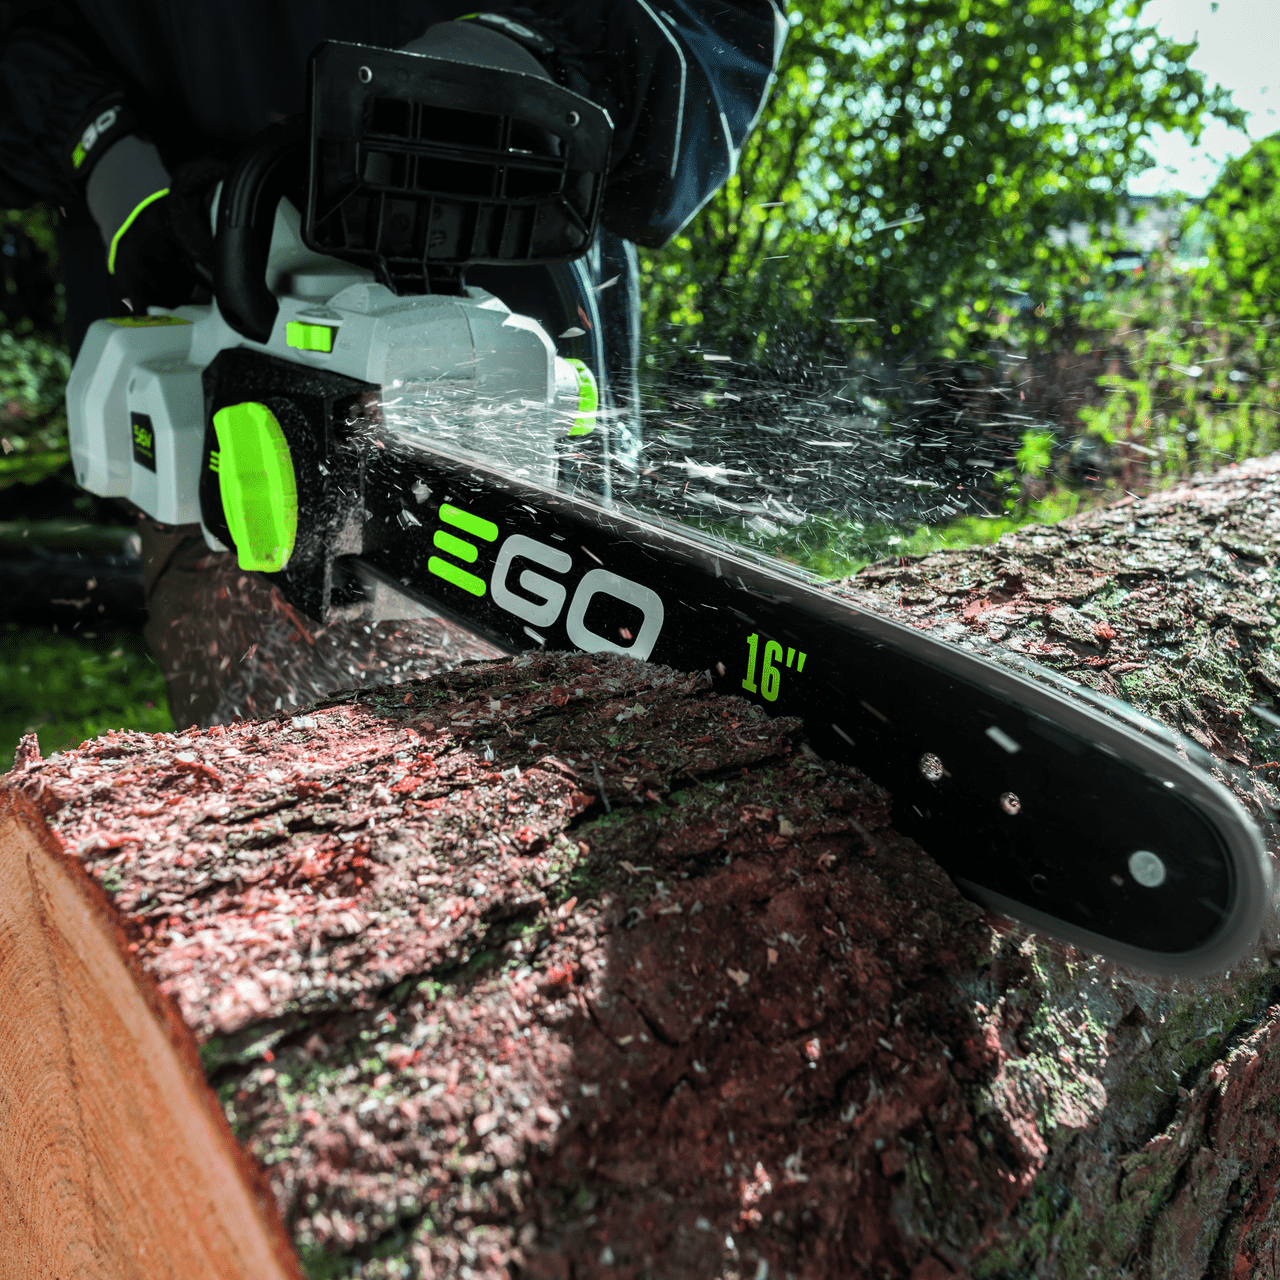 EGO Chainsaw saws through log